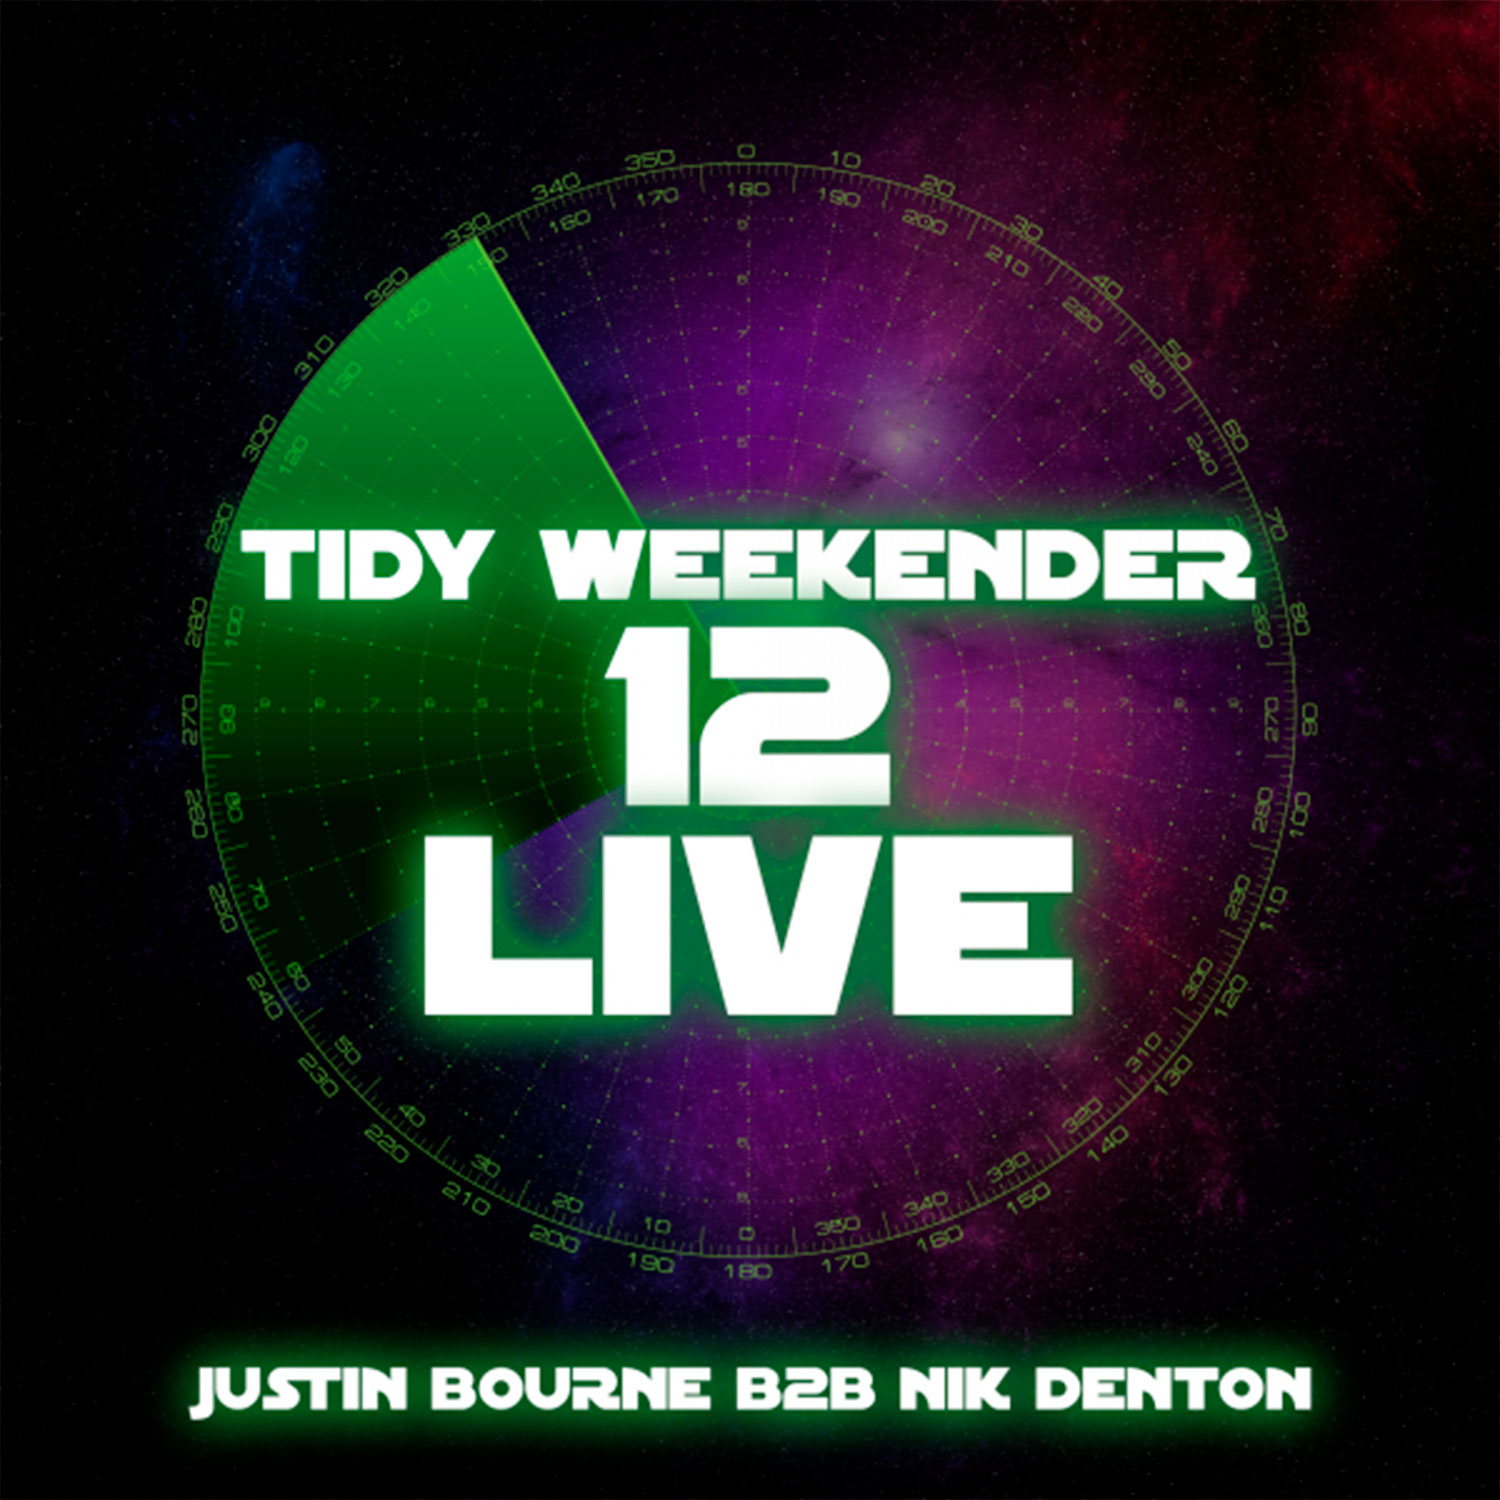 Tidy Weekender 12 Live - Justin Bourne b2b Nik Denton